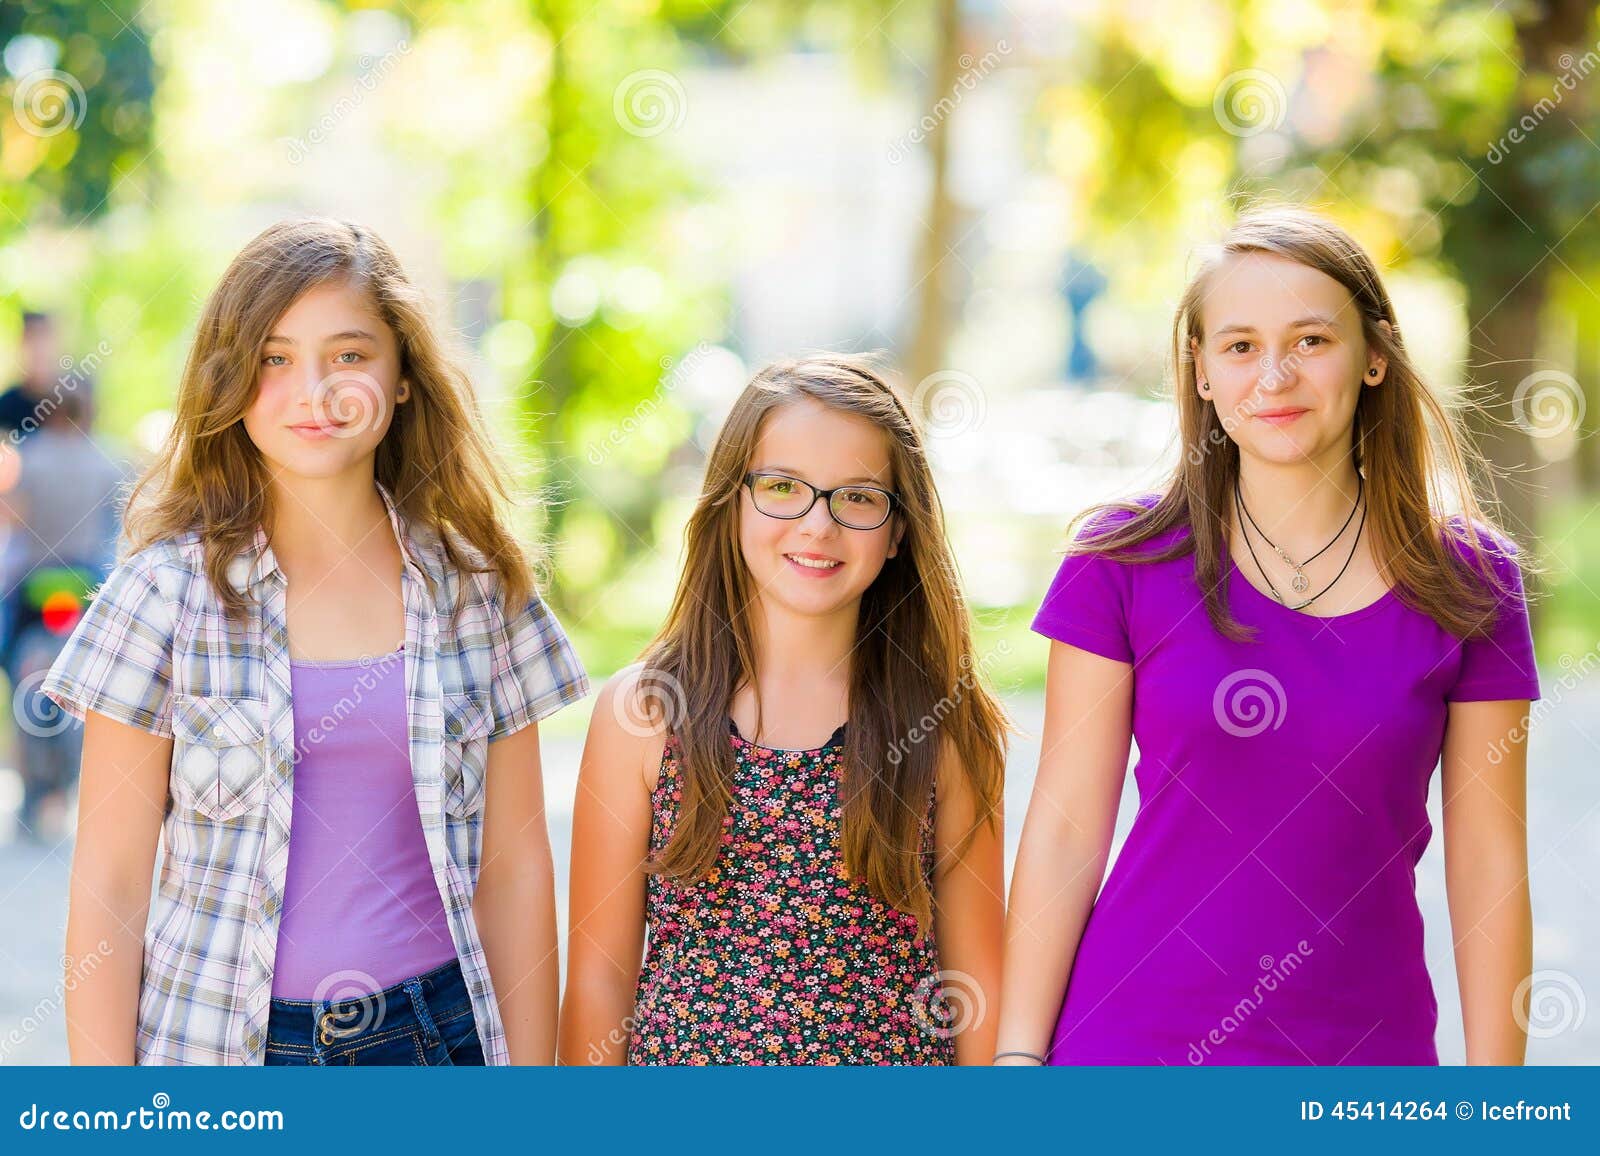 青春男女学生走在校园路上背影高清图片下载-正版图片500392074-摄图网